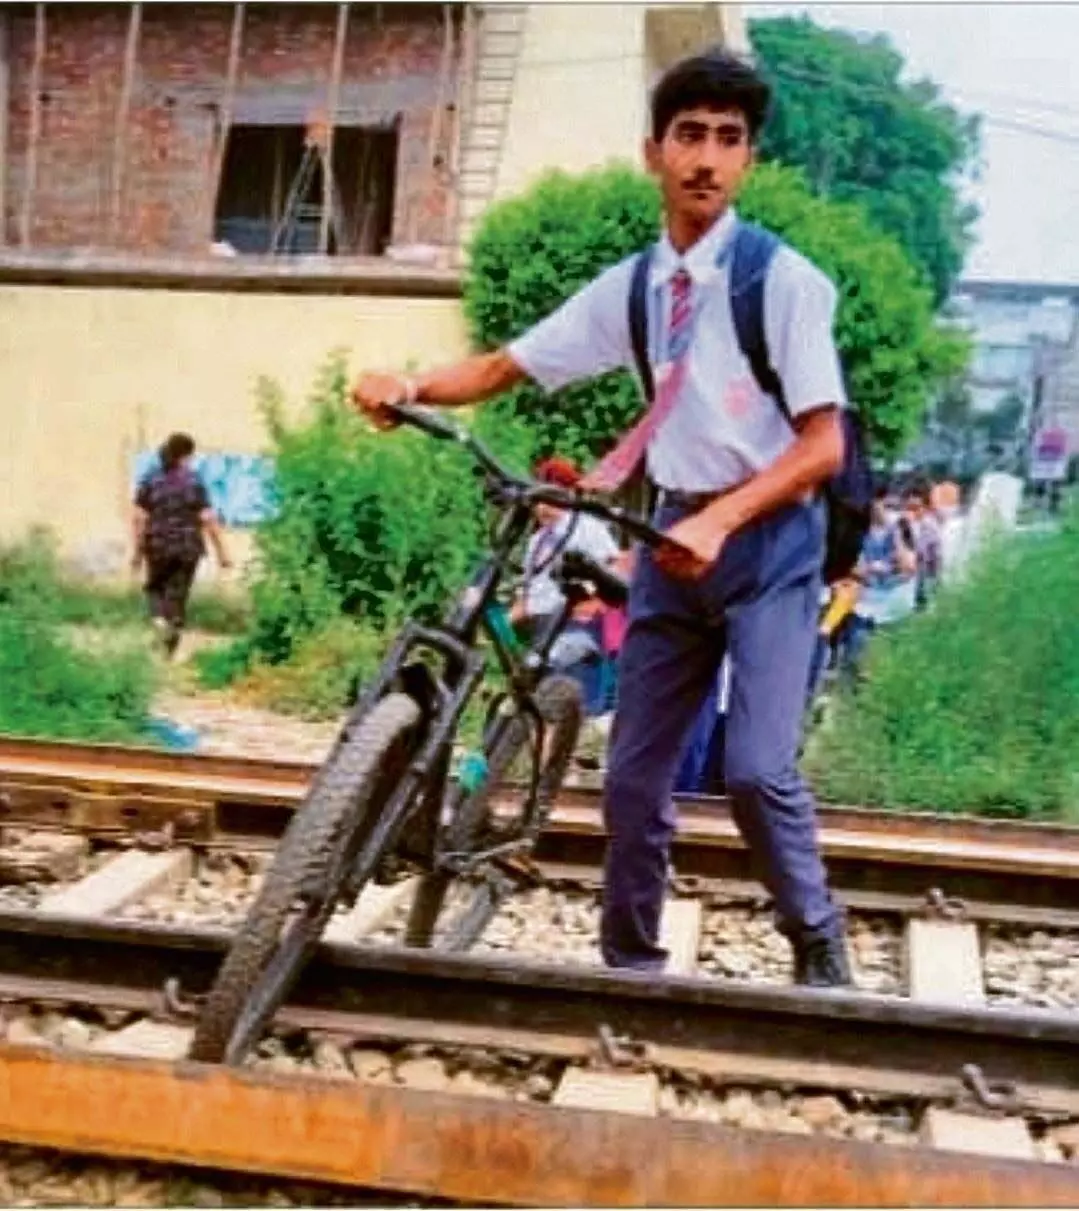 Haryana : नरवाना रेलवे जंक्शन पर जान जोखिम में डालकर यात्रा कर रहे यात्री